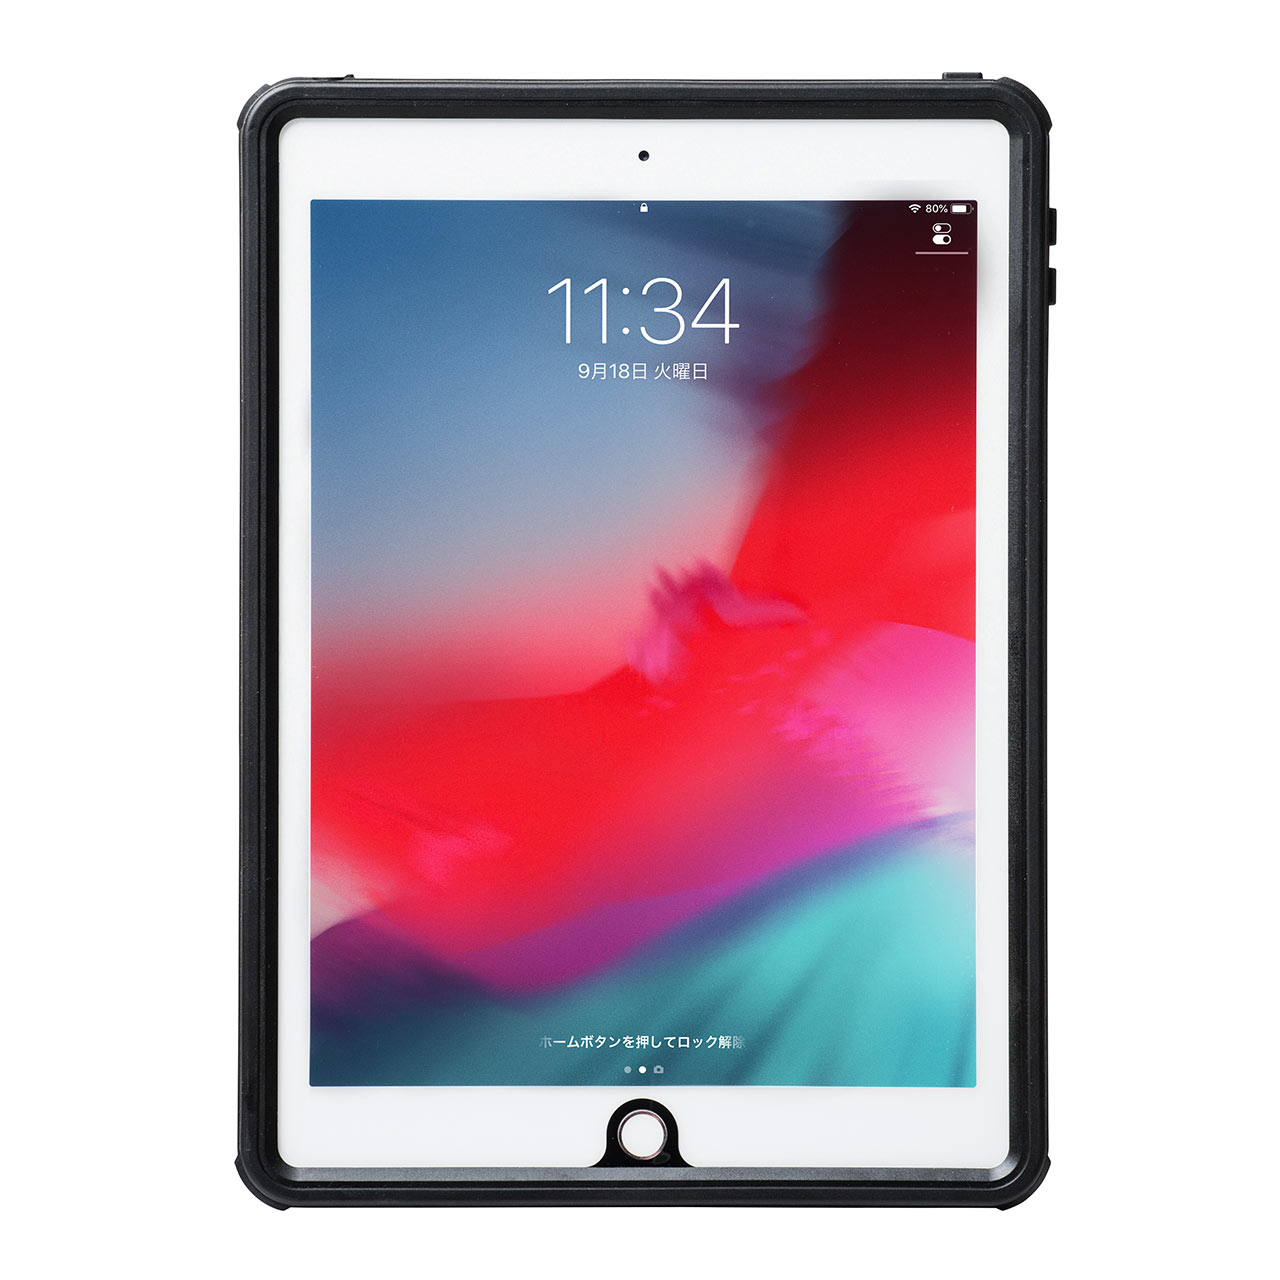 iPad 9.7C` 2018/2017hϏՌn[hP[X@ihoEX^h@\EIP68EXgbvtj 200-TABC019WP